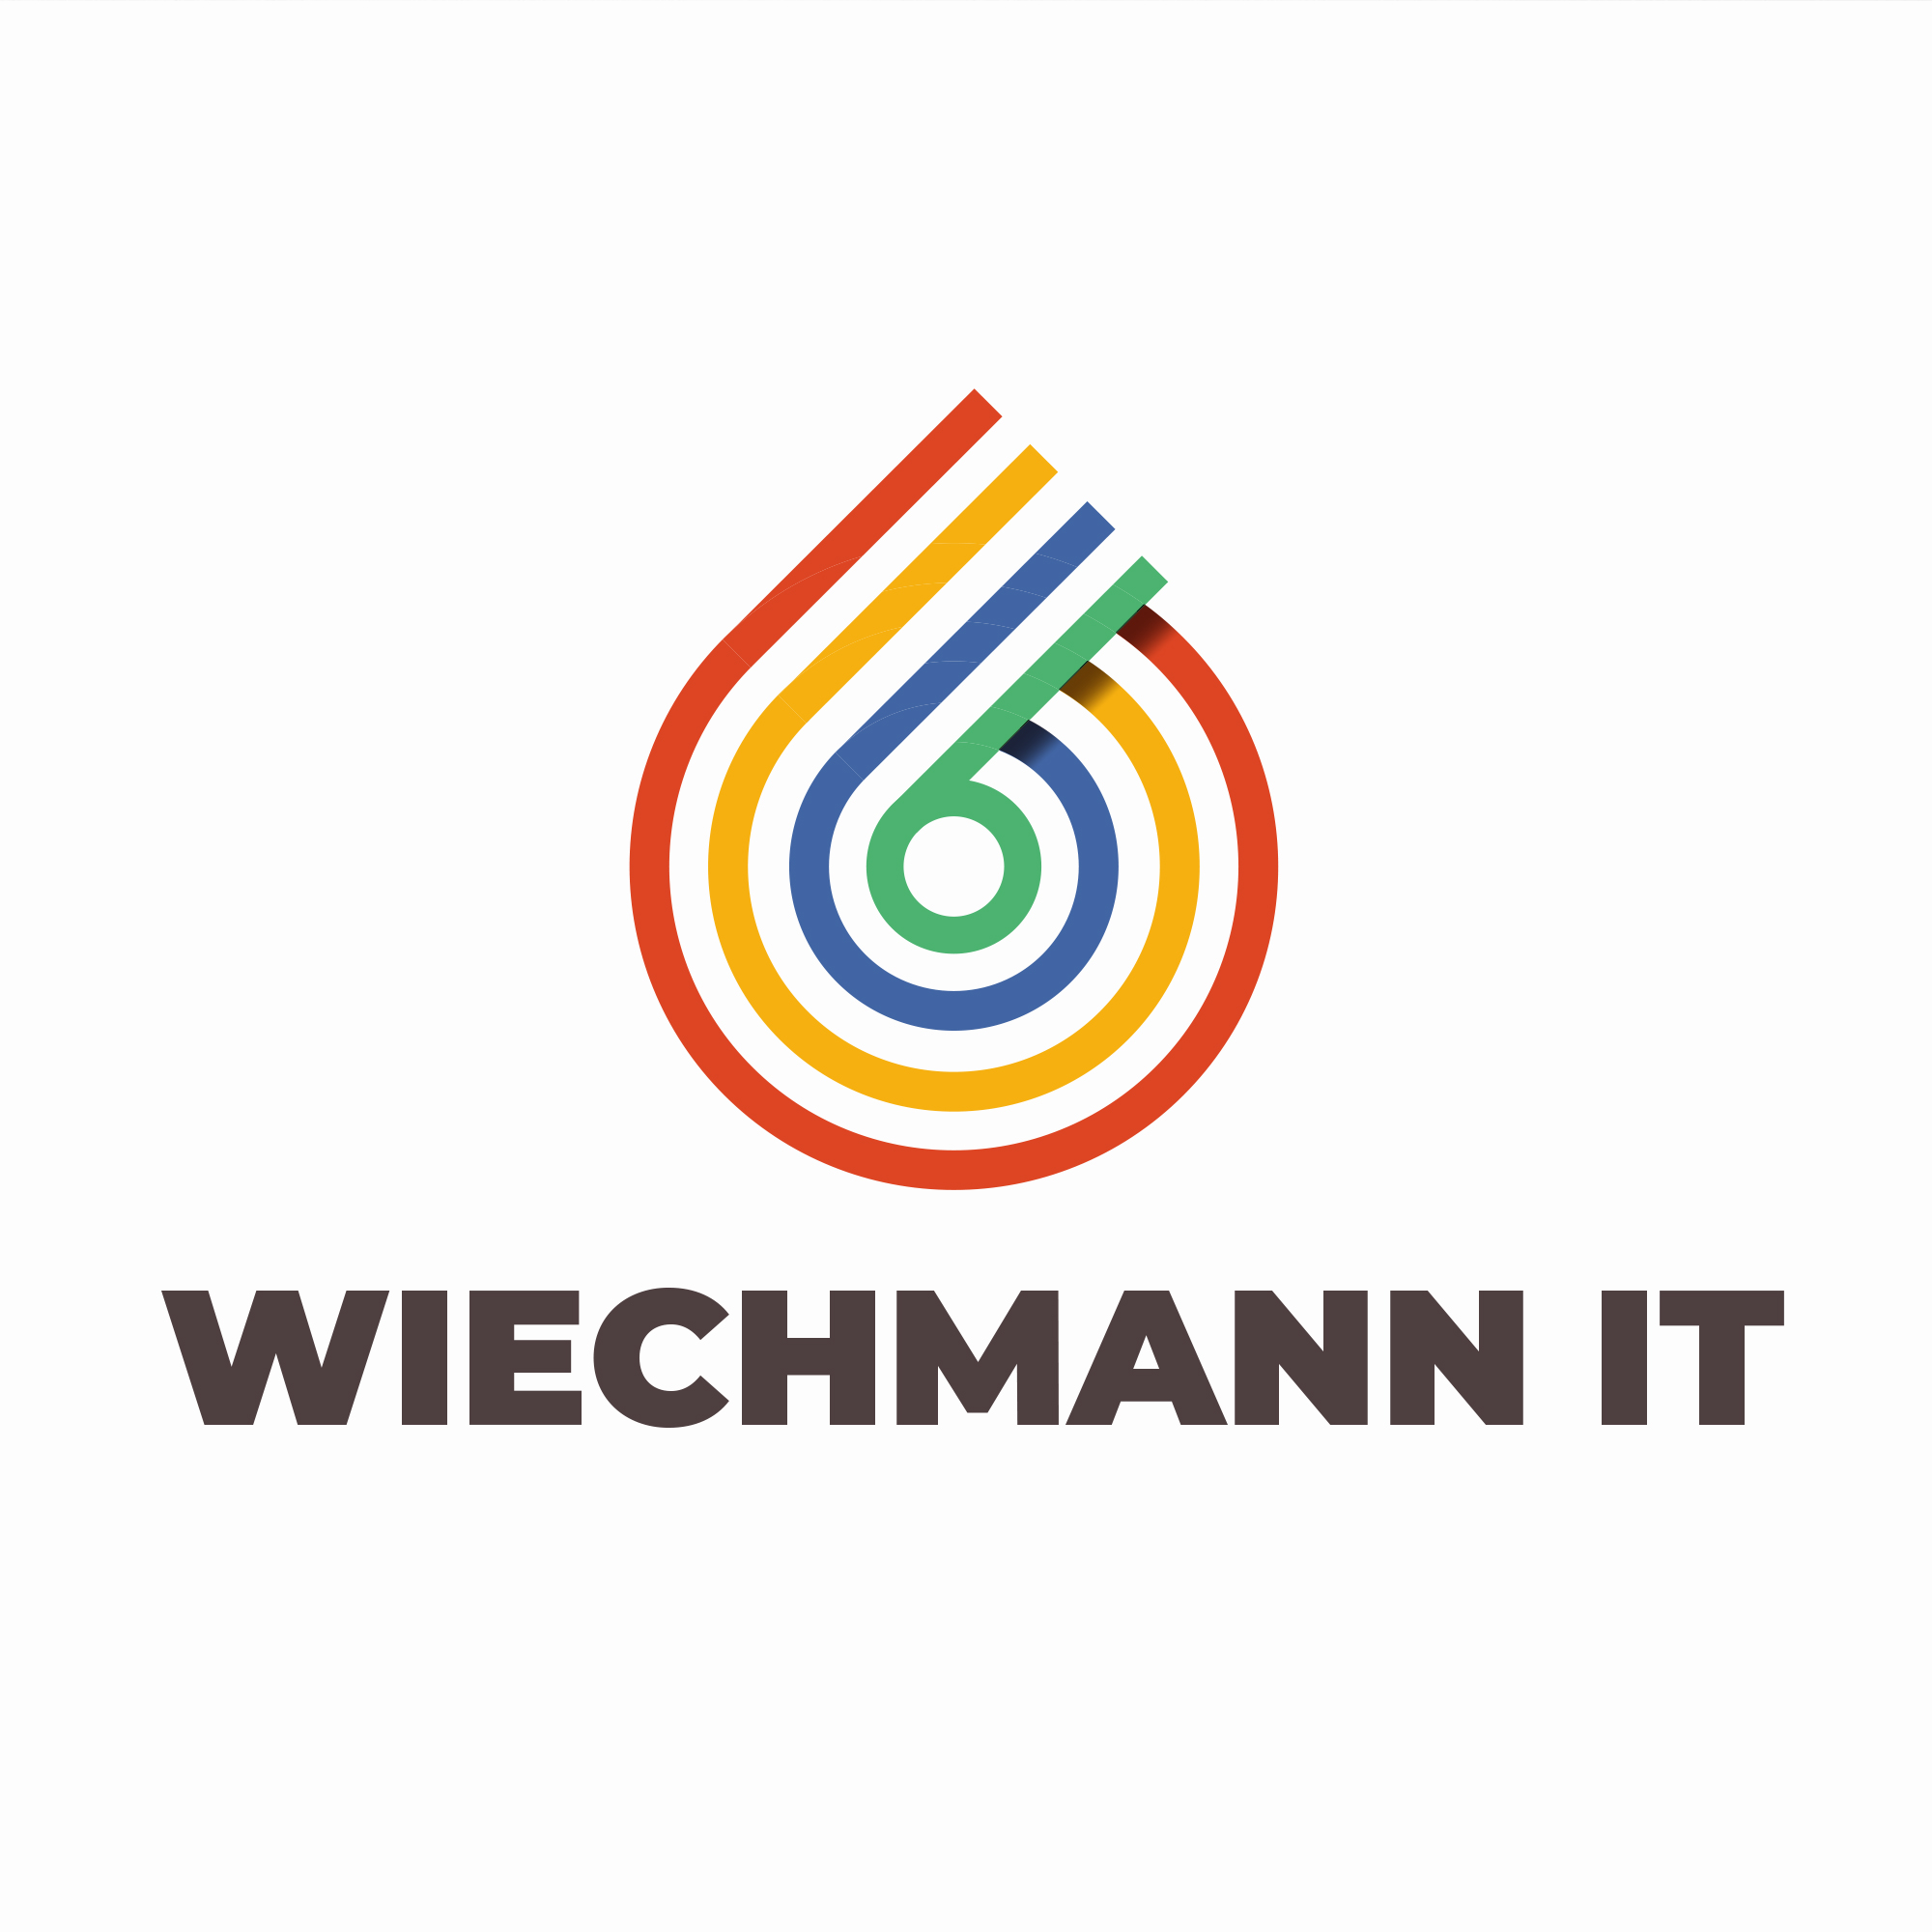 Wiechmann IT  [ LOGO ]